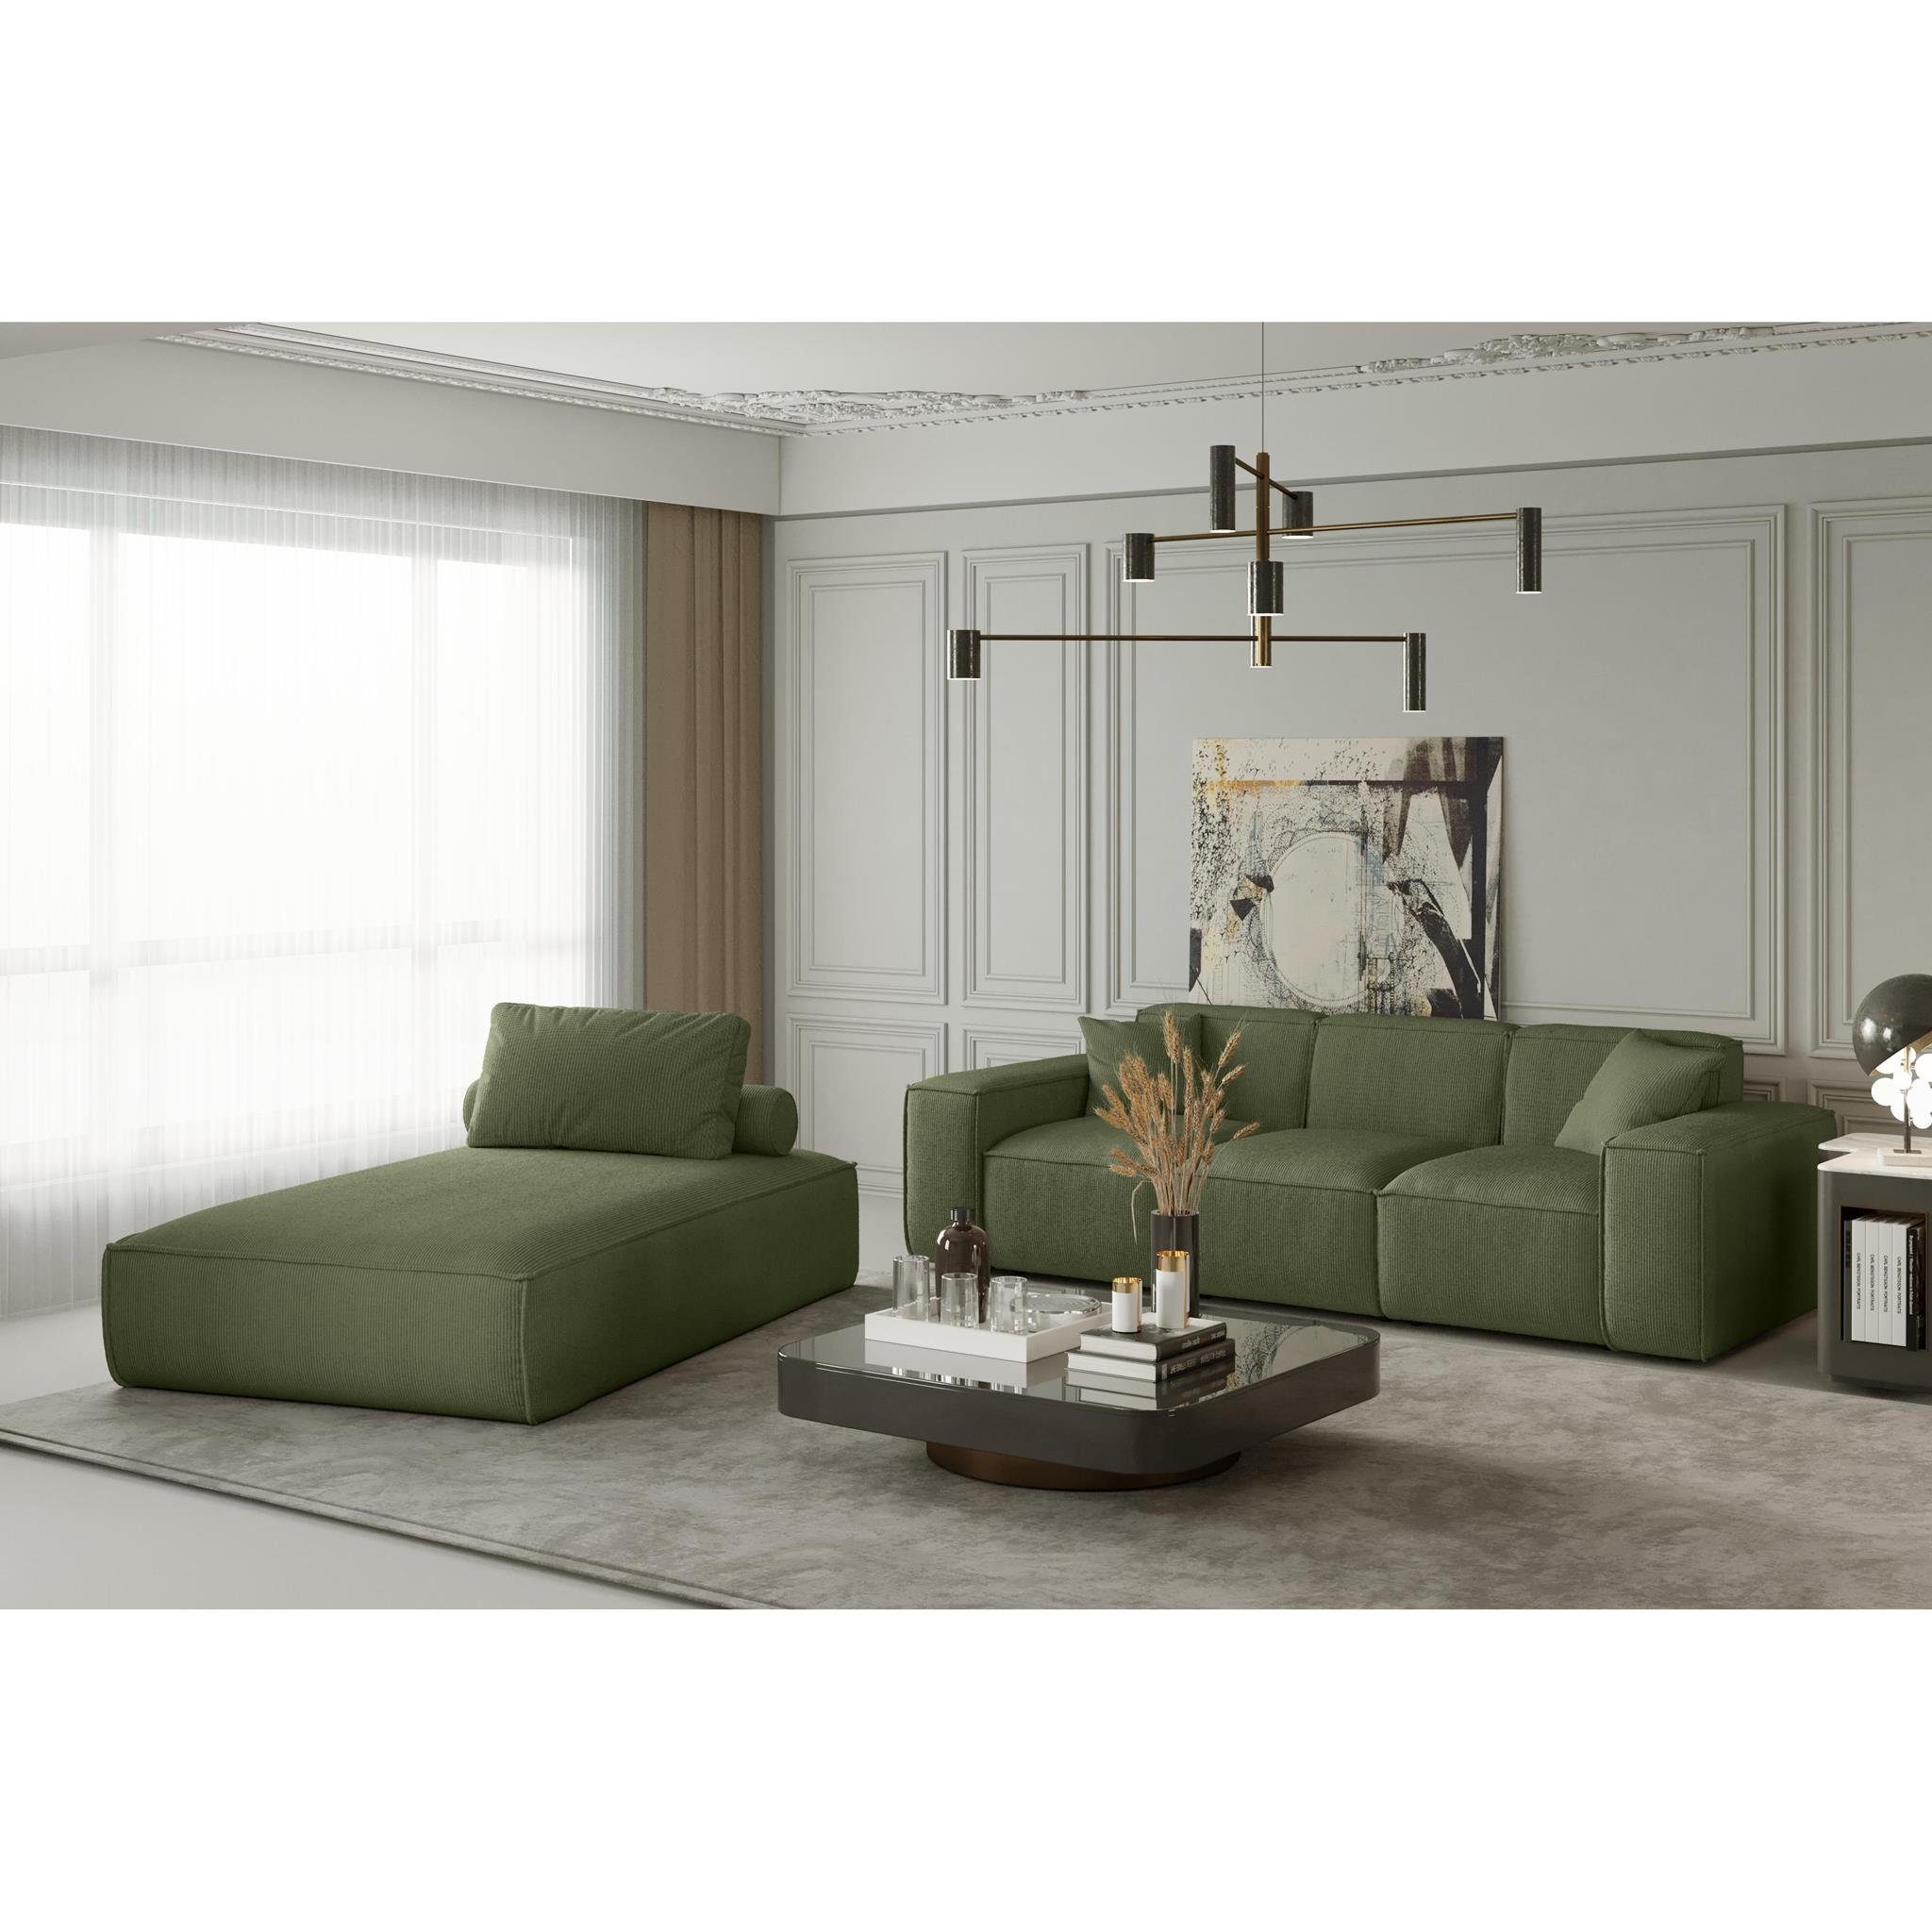 Beautysofa Relaxliege mit Lounge zwei modern, Sessel Wellenfedern, mit oder Cord- Velvetstoff, gepolstert Kissen Lugano